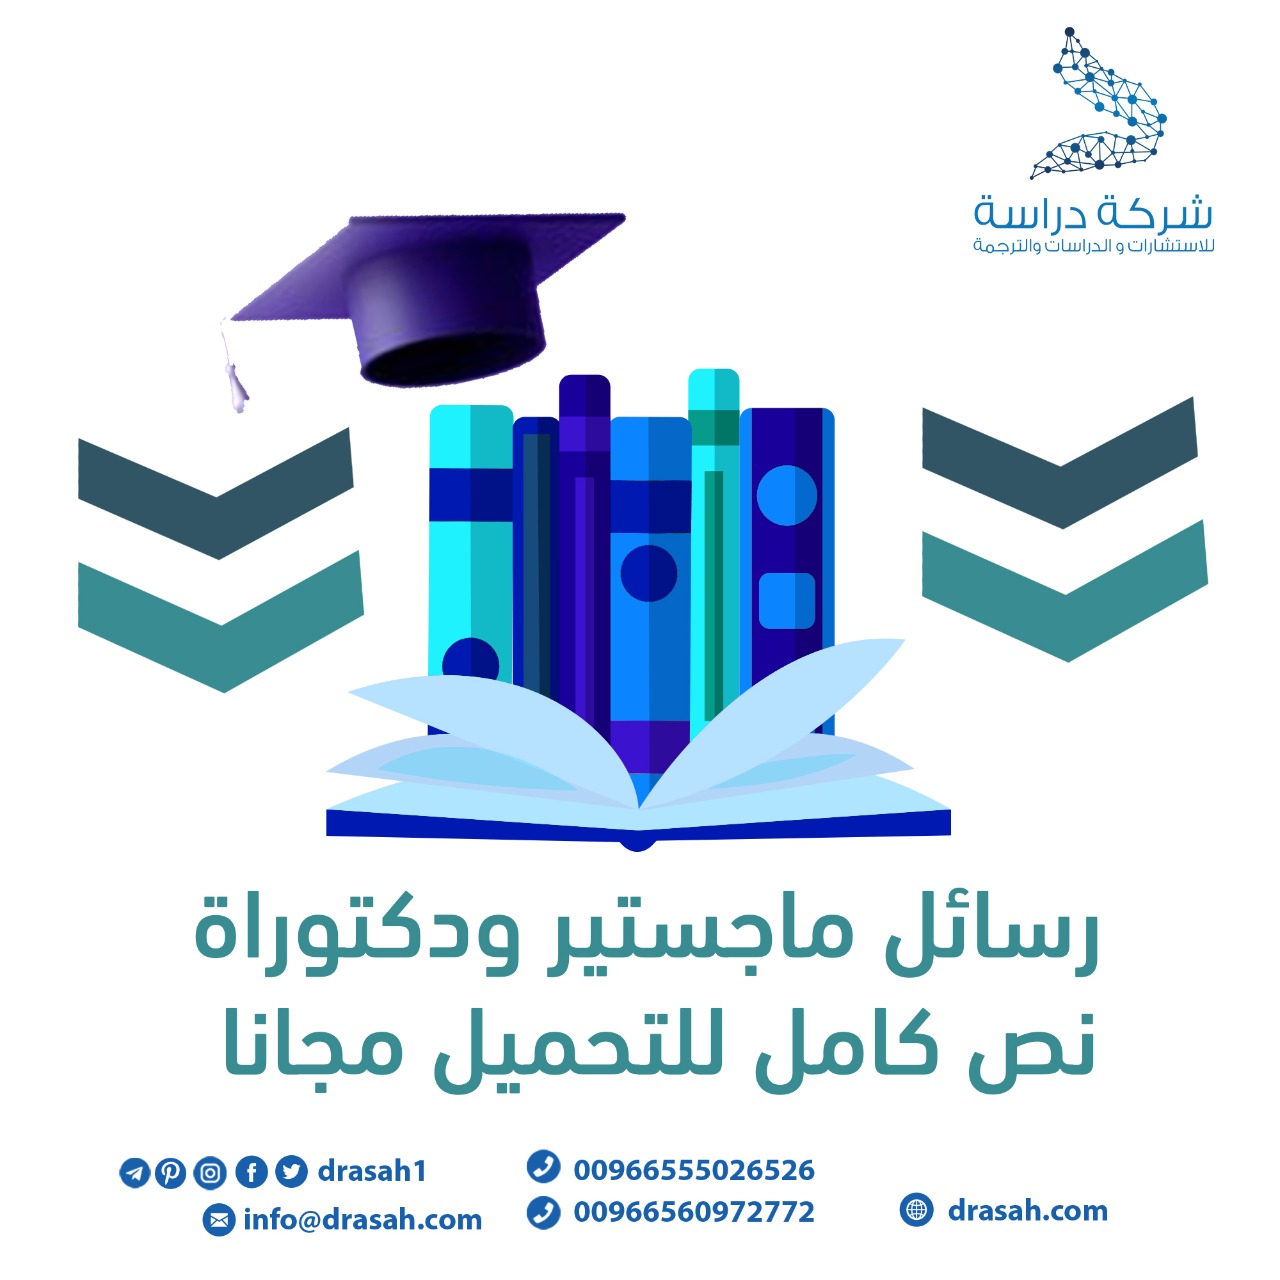 أثر القيادة الخادمة في إدارات الطلبة الدوليين بالجامعات السعودية على تعزيز الصورة الإيجابية للمملكة العربية السعودية pdf